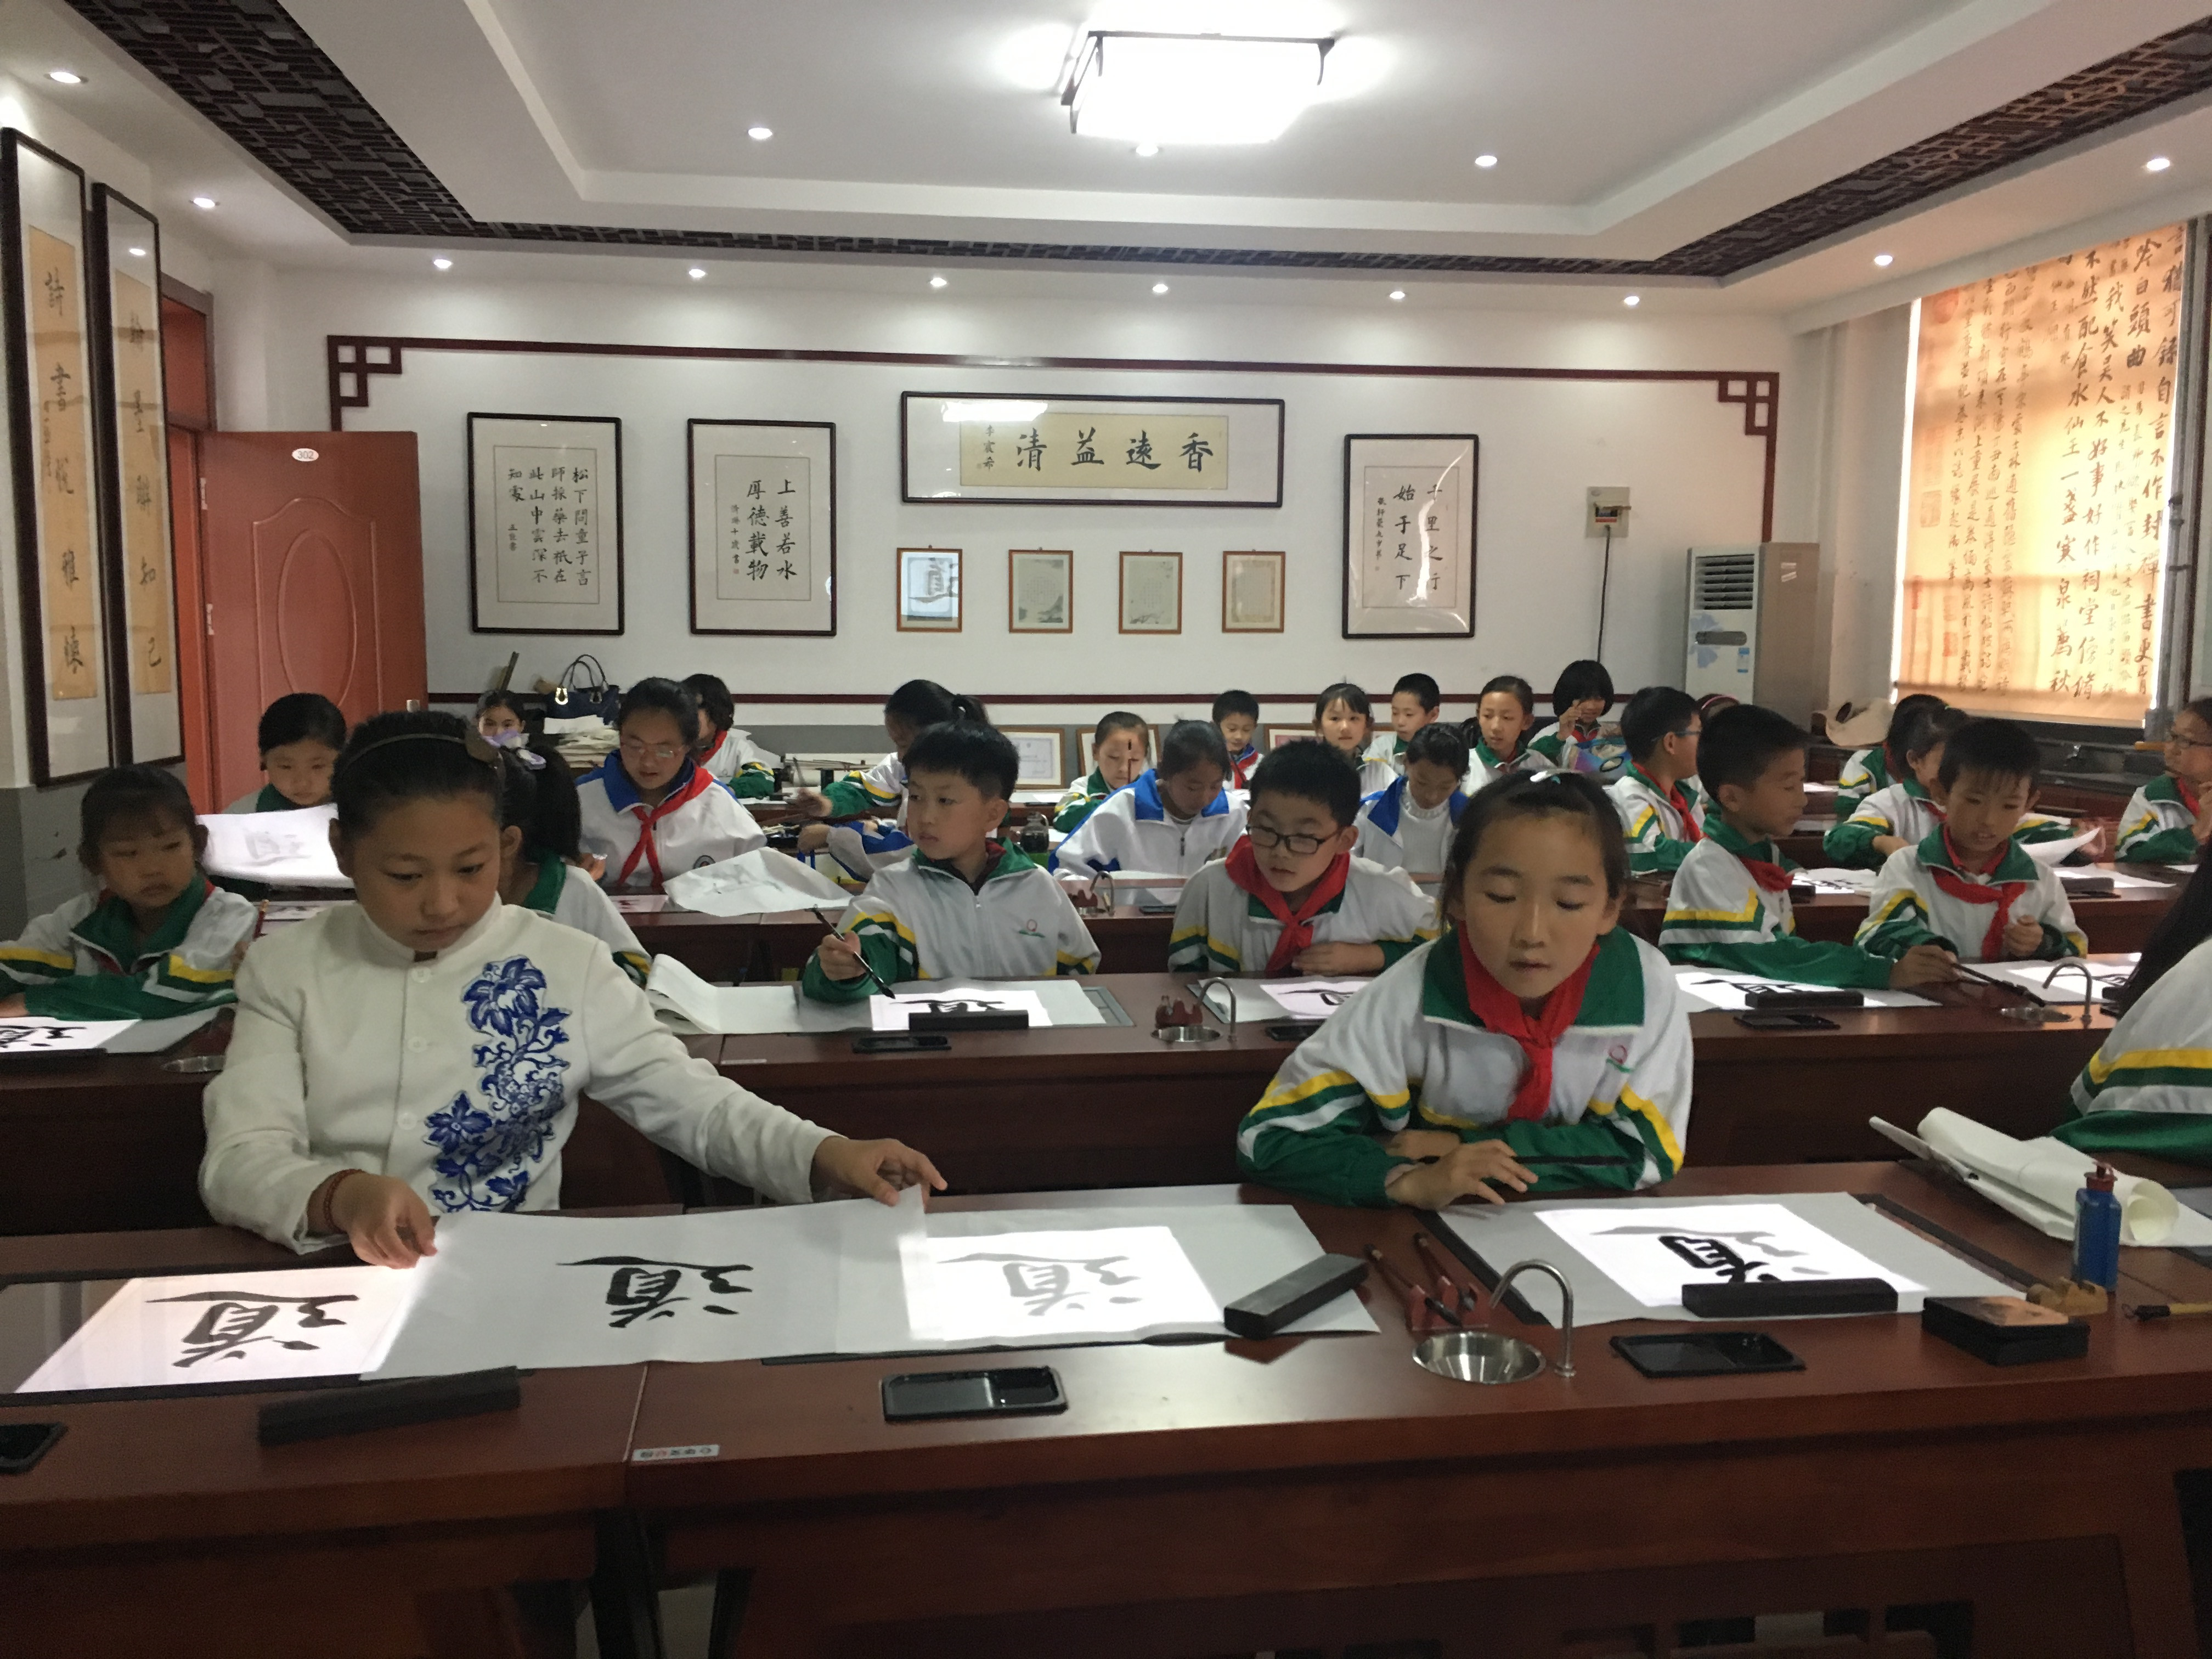 關於中國小開展書法教育的意見